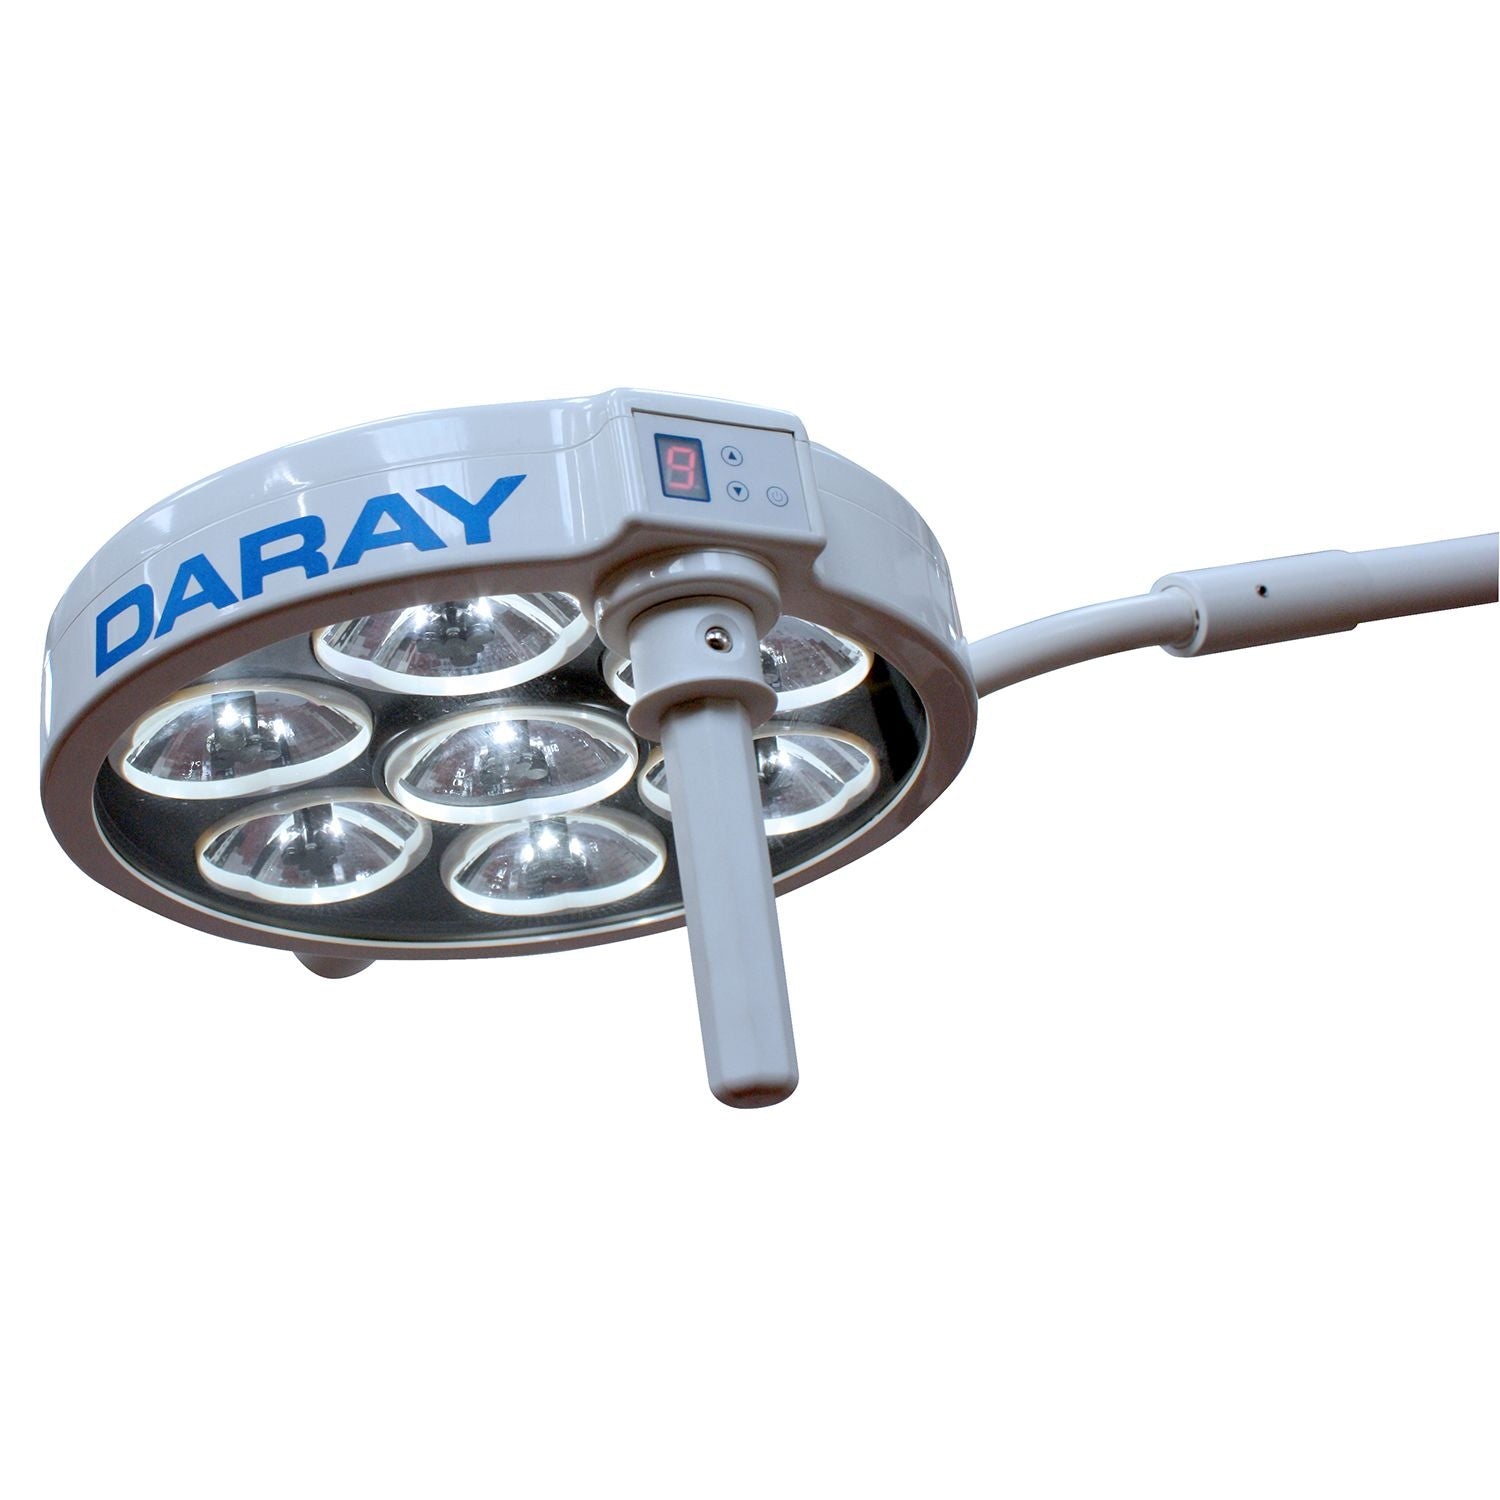 Daray S430 LED Surgery Light (1)